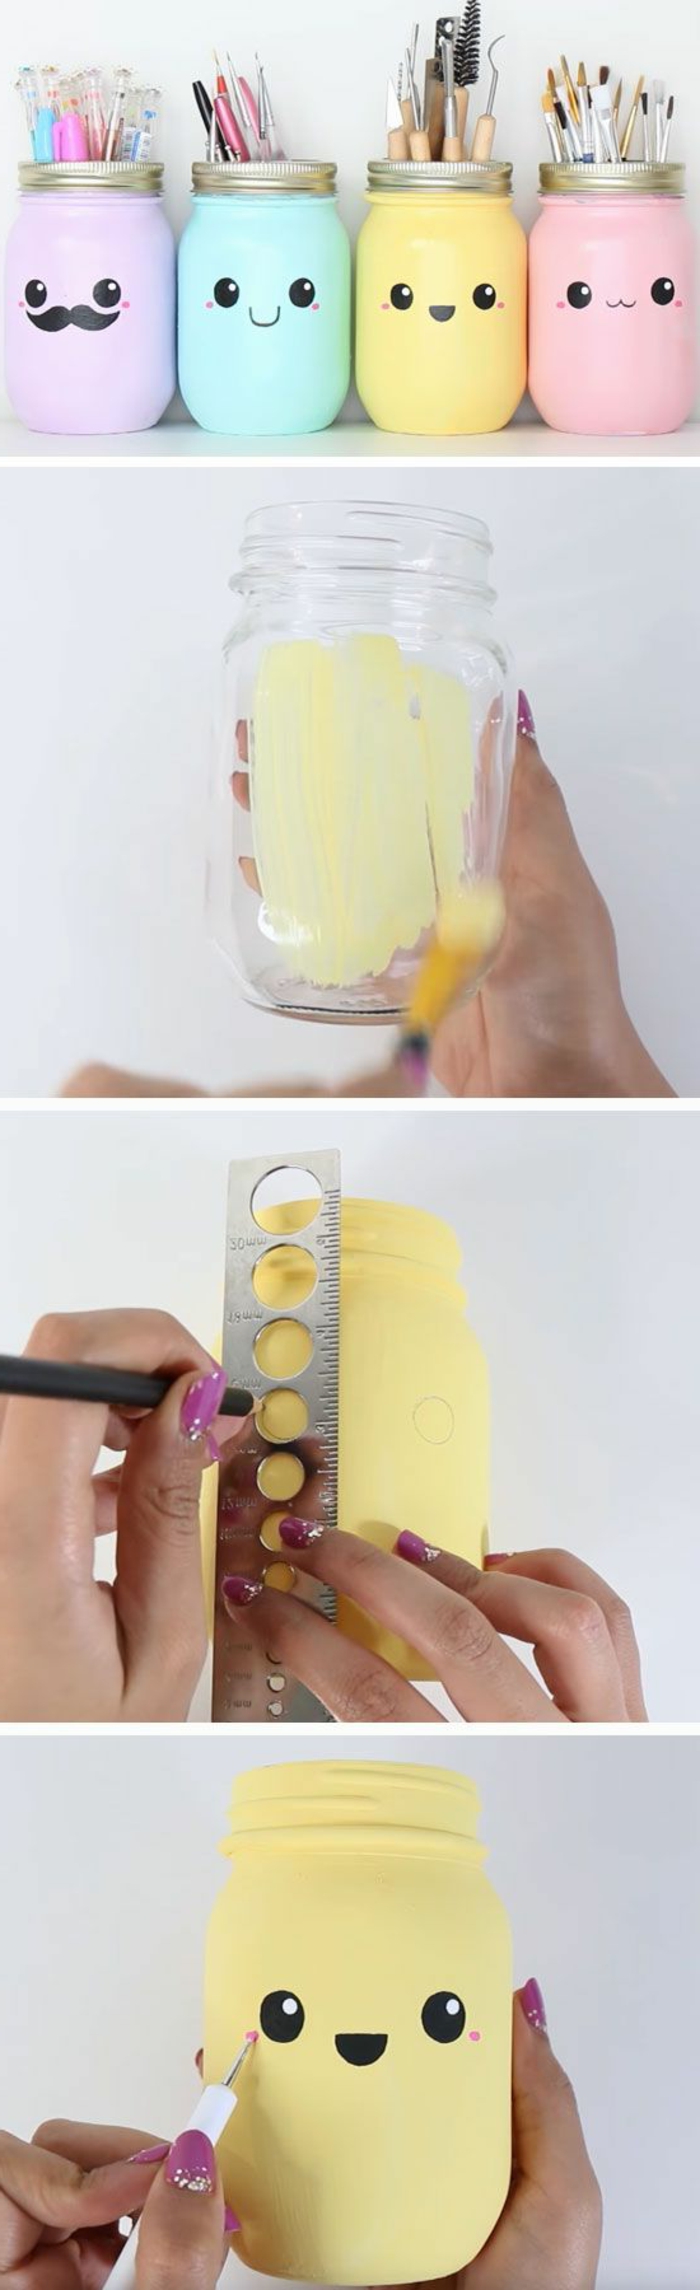 idée comment fabriquer un pot a crayon diy à partir de bocal en verre, repeint et décoré dessin bonhomme, idée de génie bricolage, activite manuelle